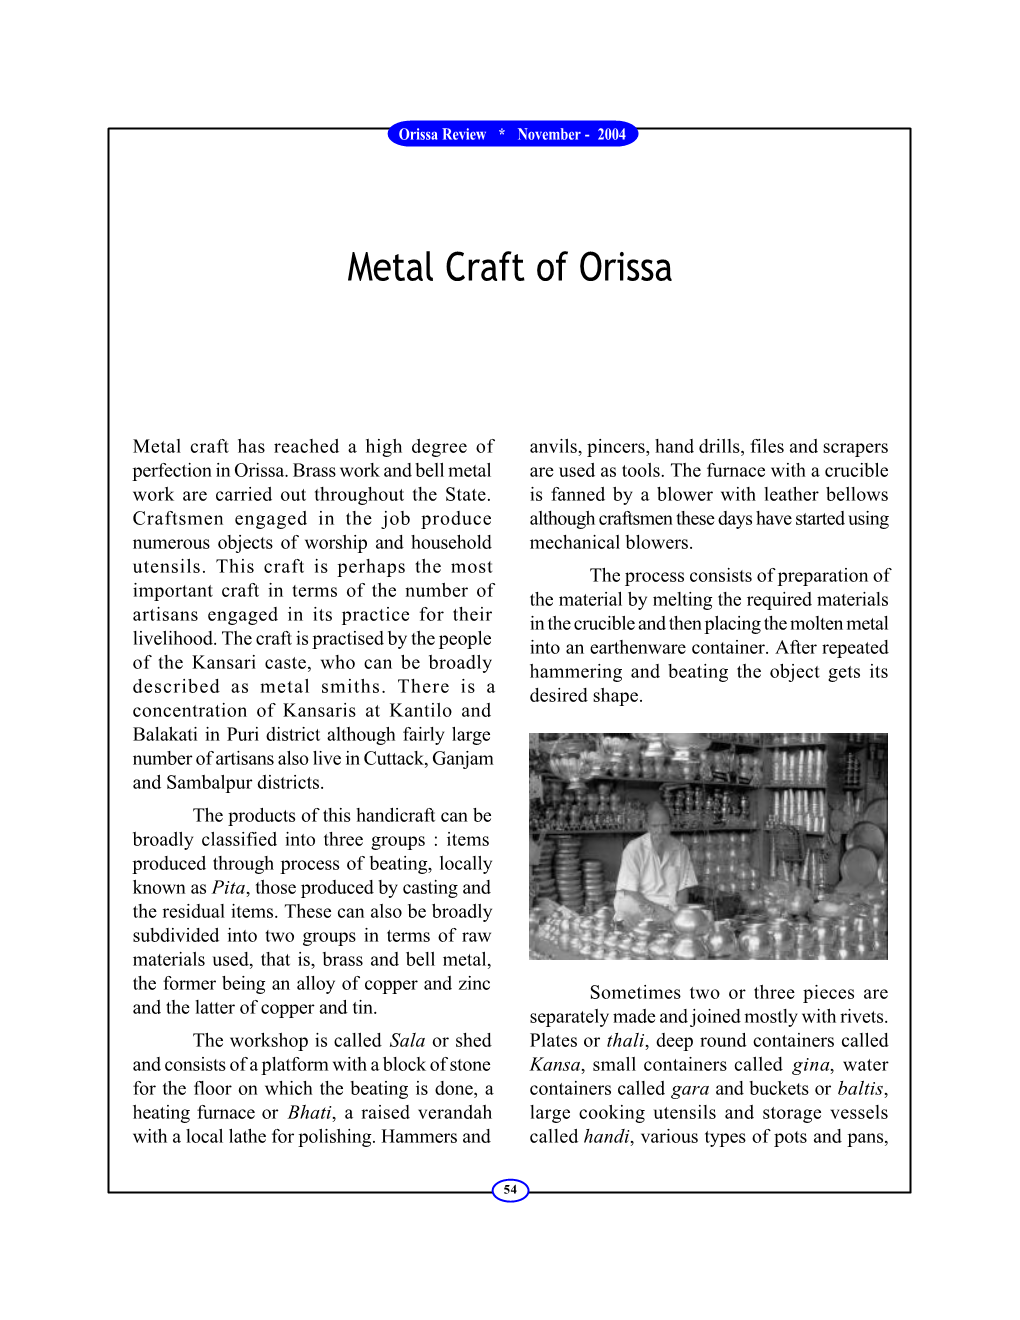 Metal Craft of Orissa